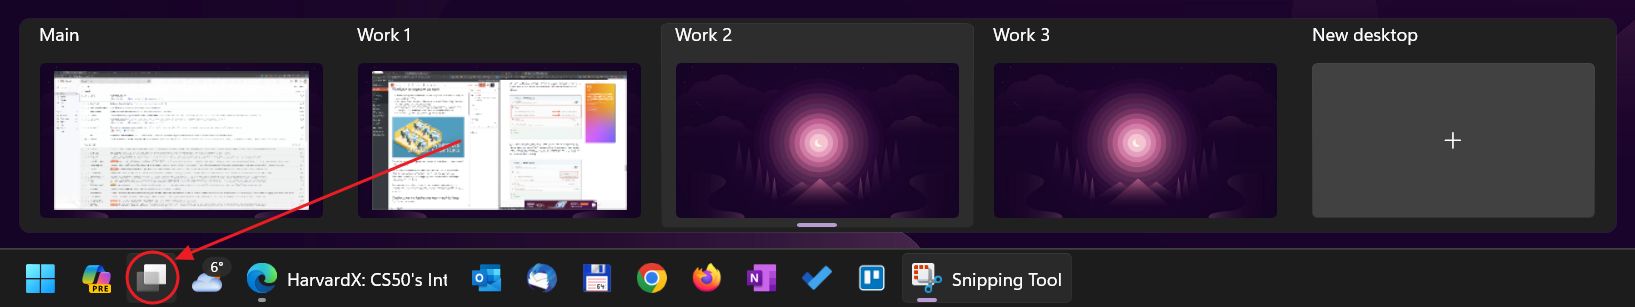 botão de visualização de tarefas do windows na barra de tarefas